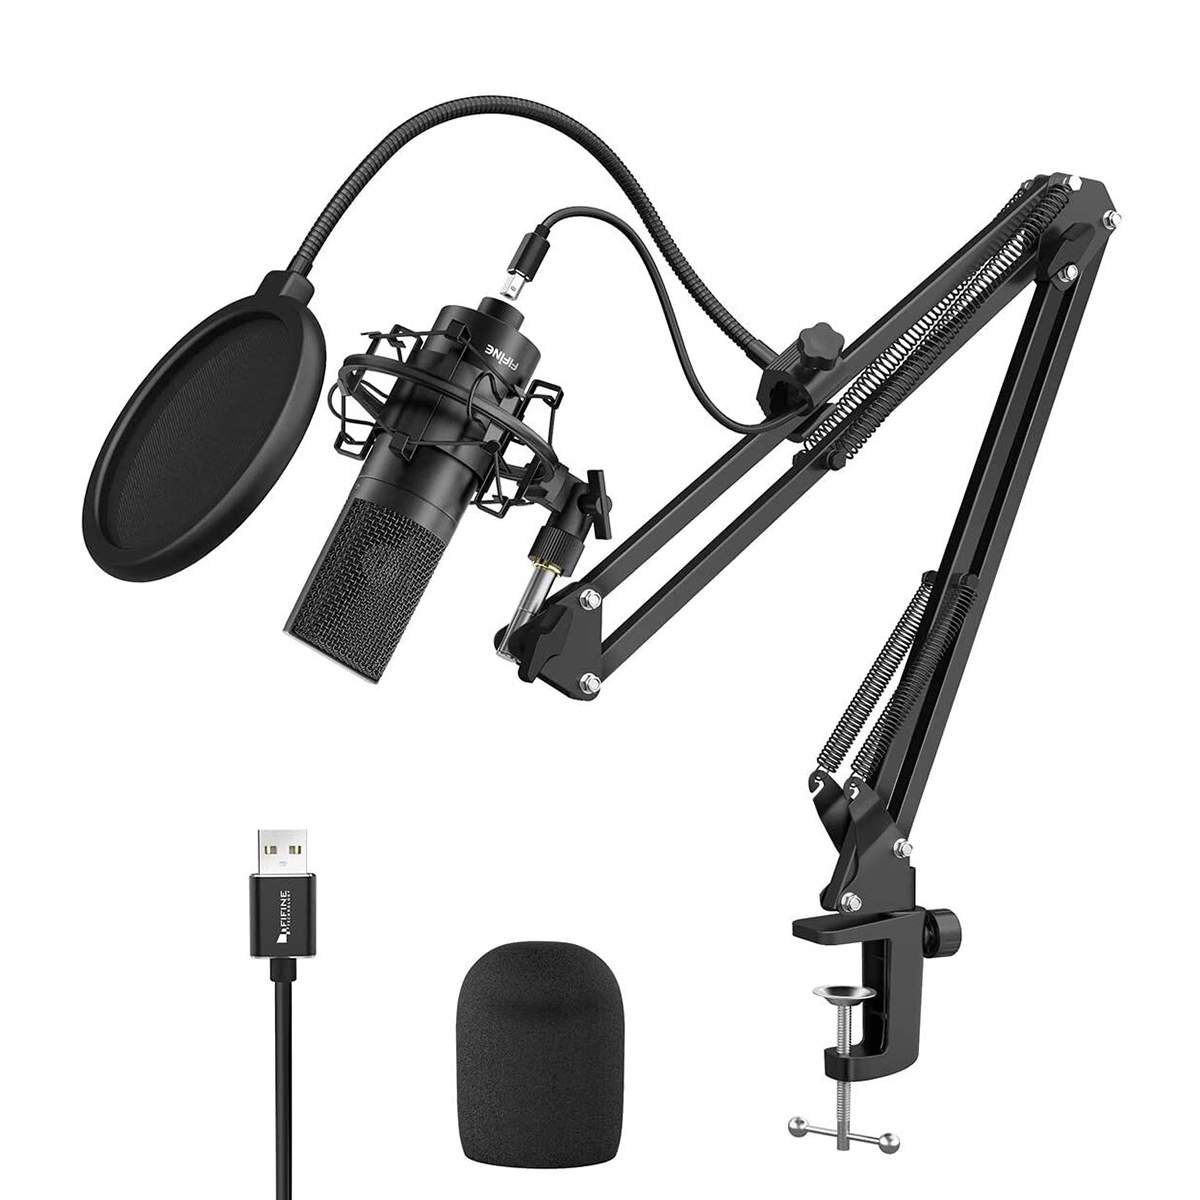 Микрофон студийный Fifine T669 USB черный - отзывы покупателей на